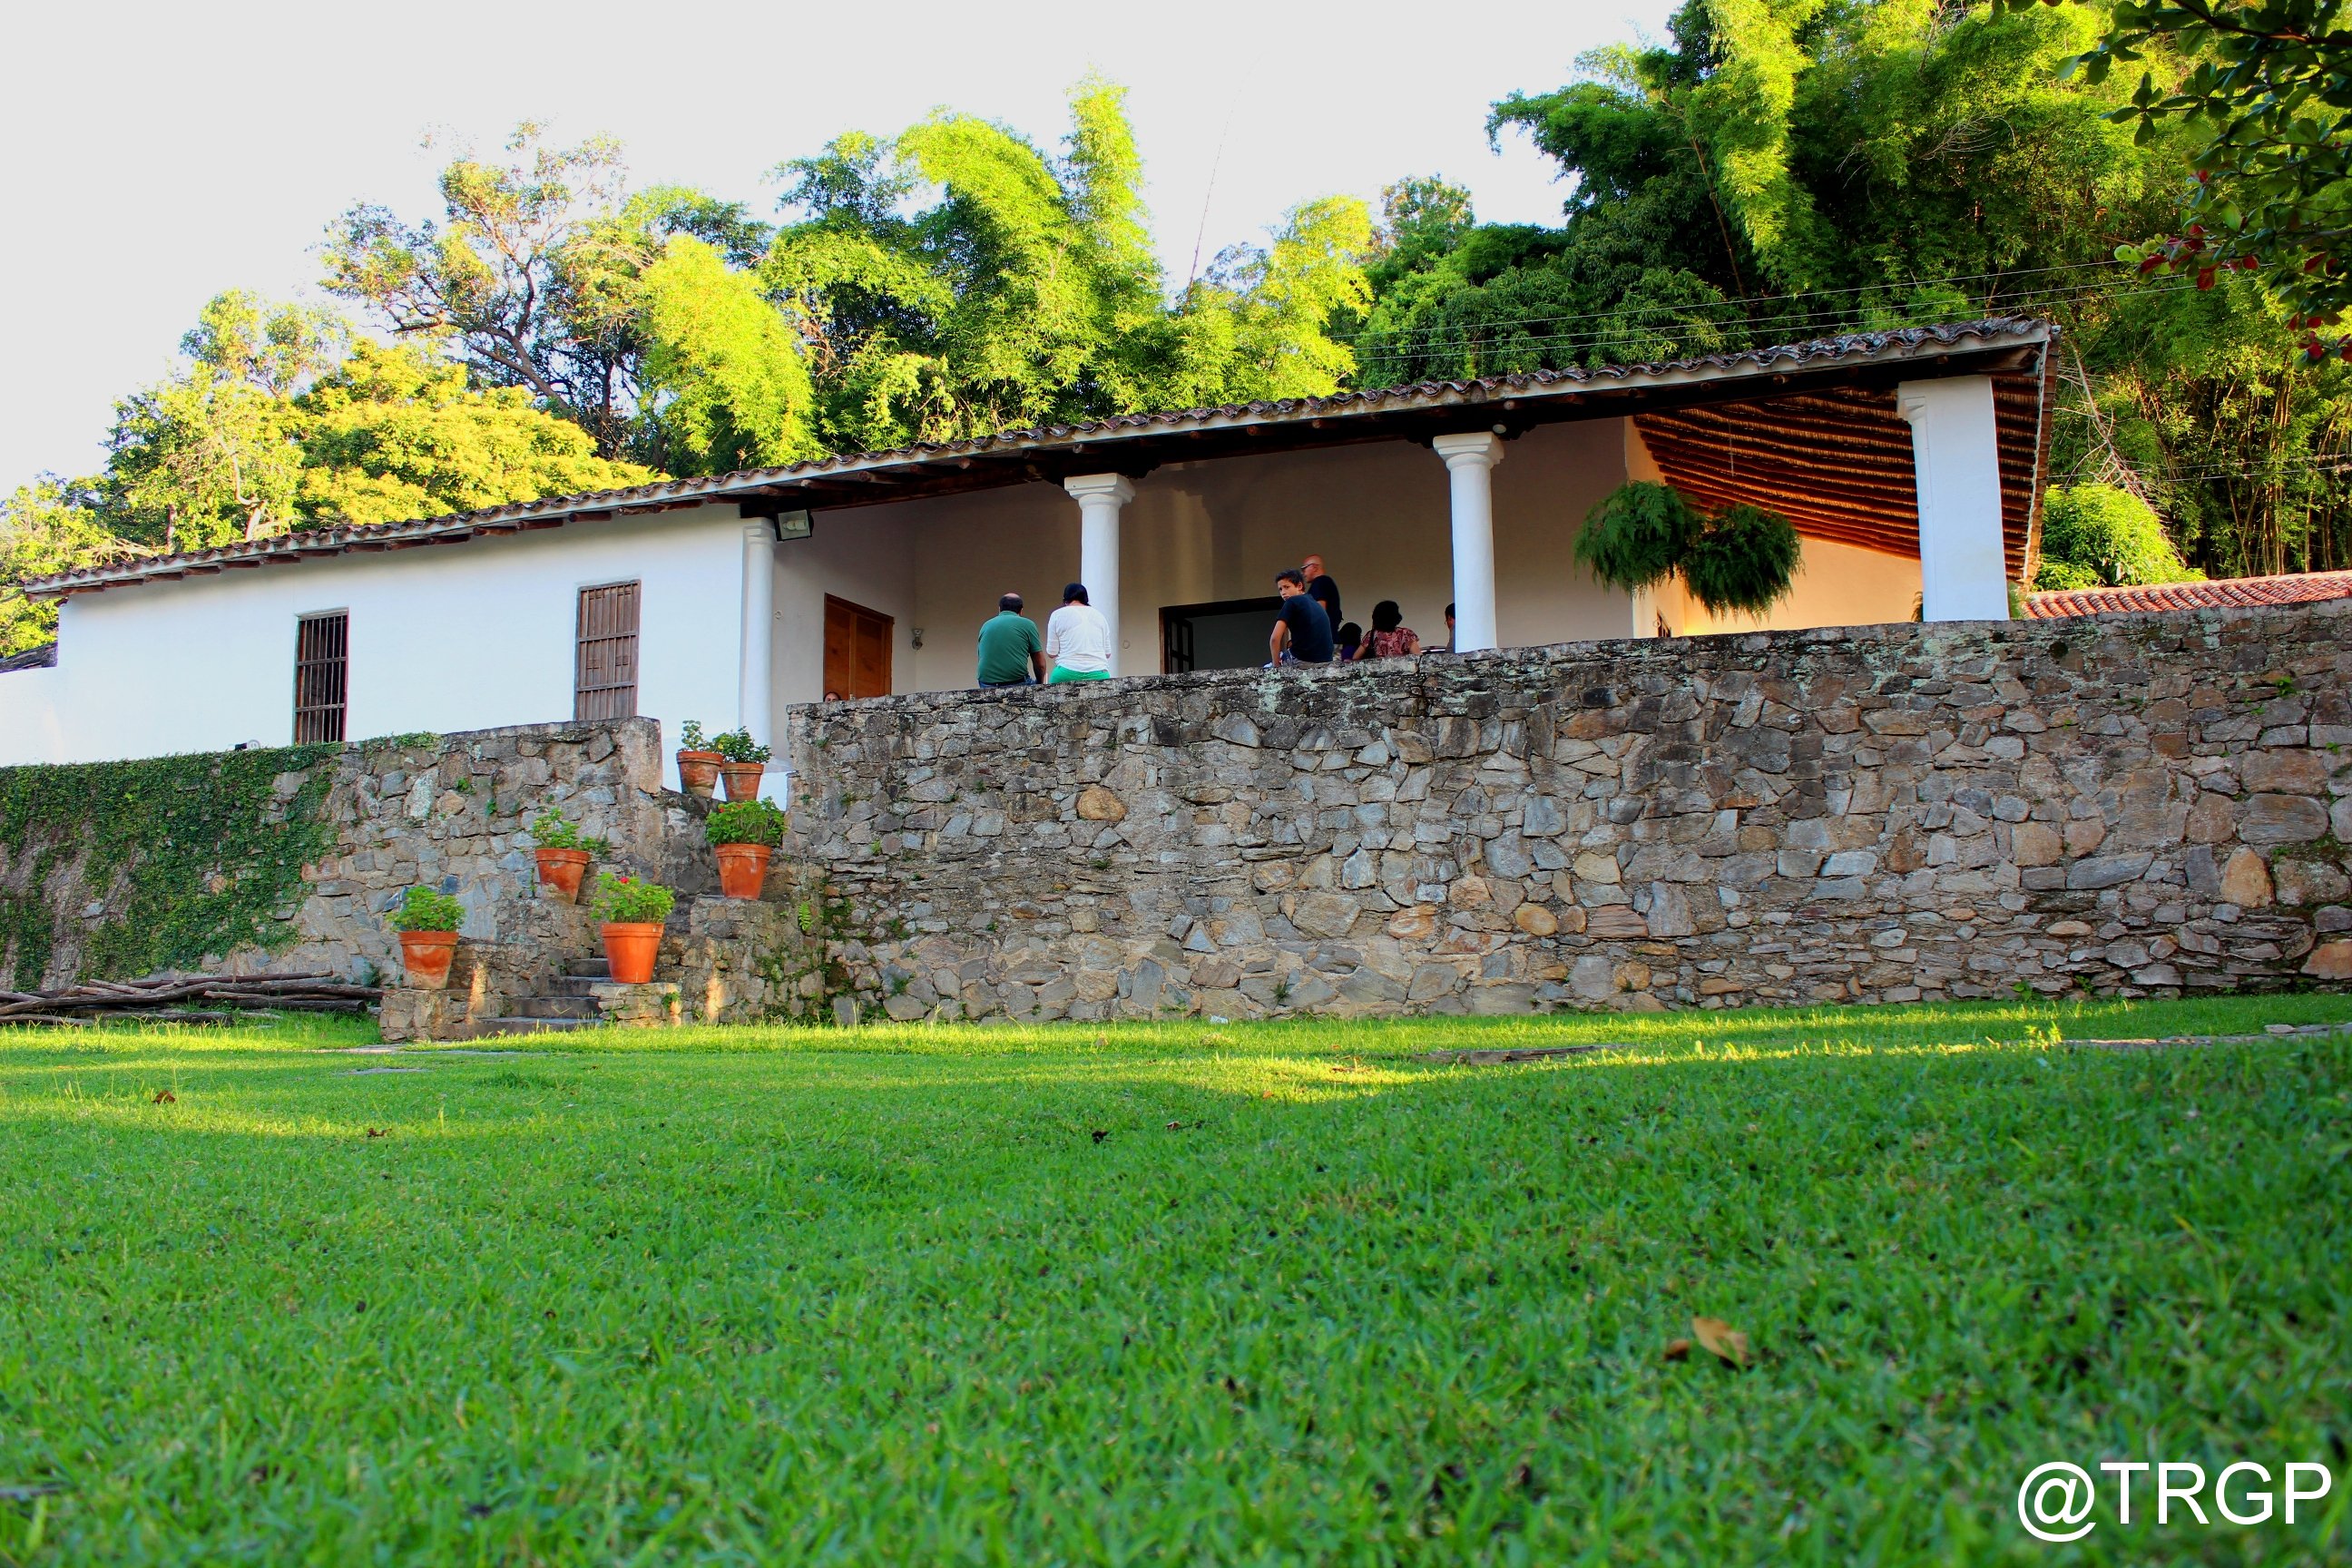 Hacienda La Trinidad